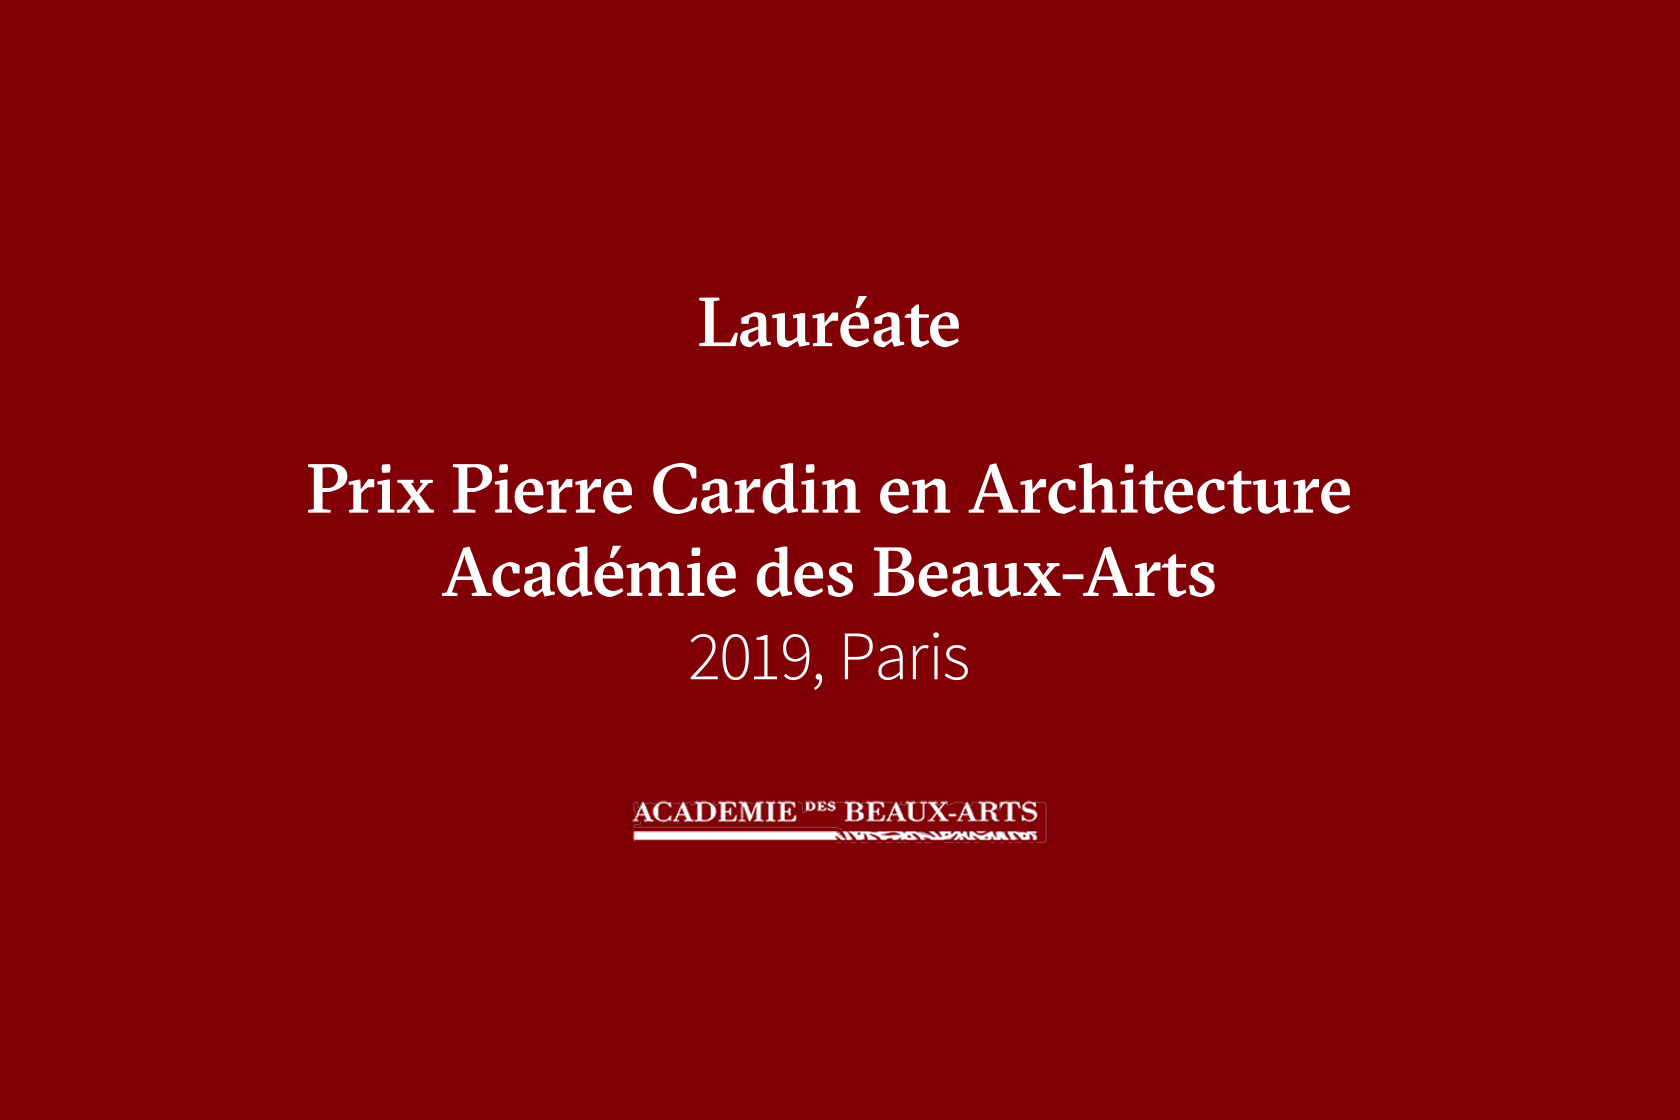 Lauréate. Prix Pierre Cardin de Académie des Beaux-Arts Lina Ghotmeh — Architecture PierreCardin_News3